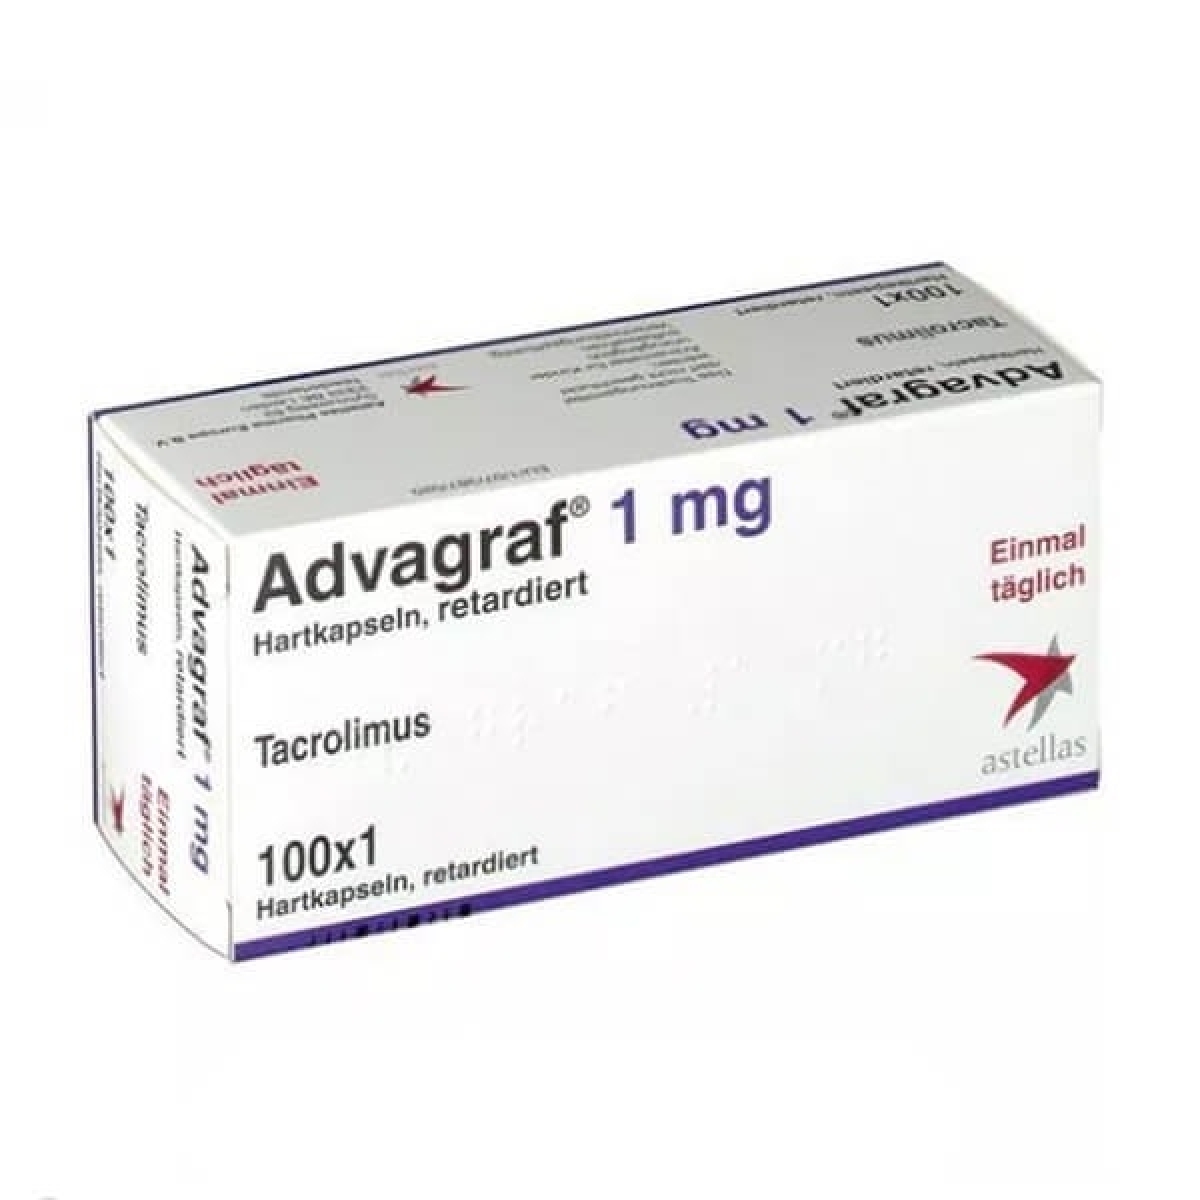 Advagraf là thuốc chống thải ghép cho bệnh nhân chạy thận có giá đắt đỏ.